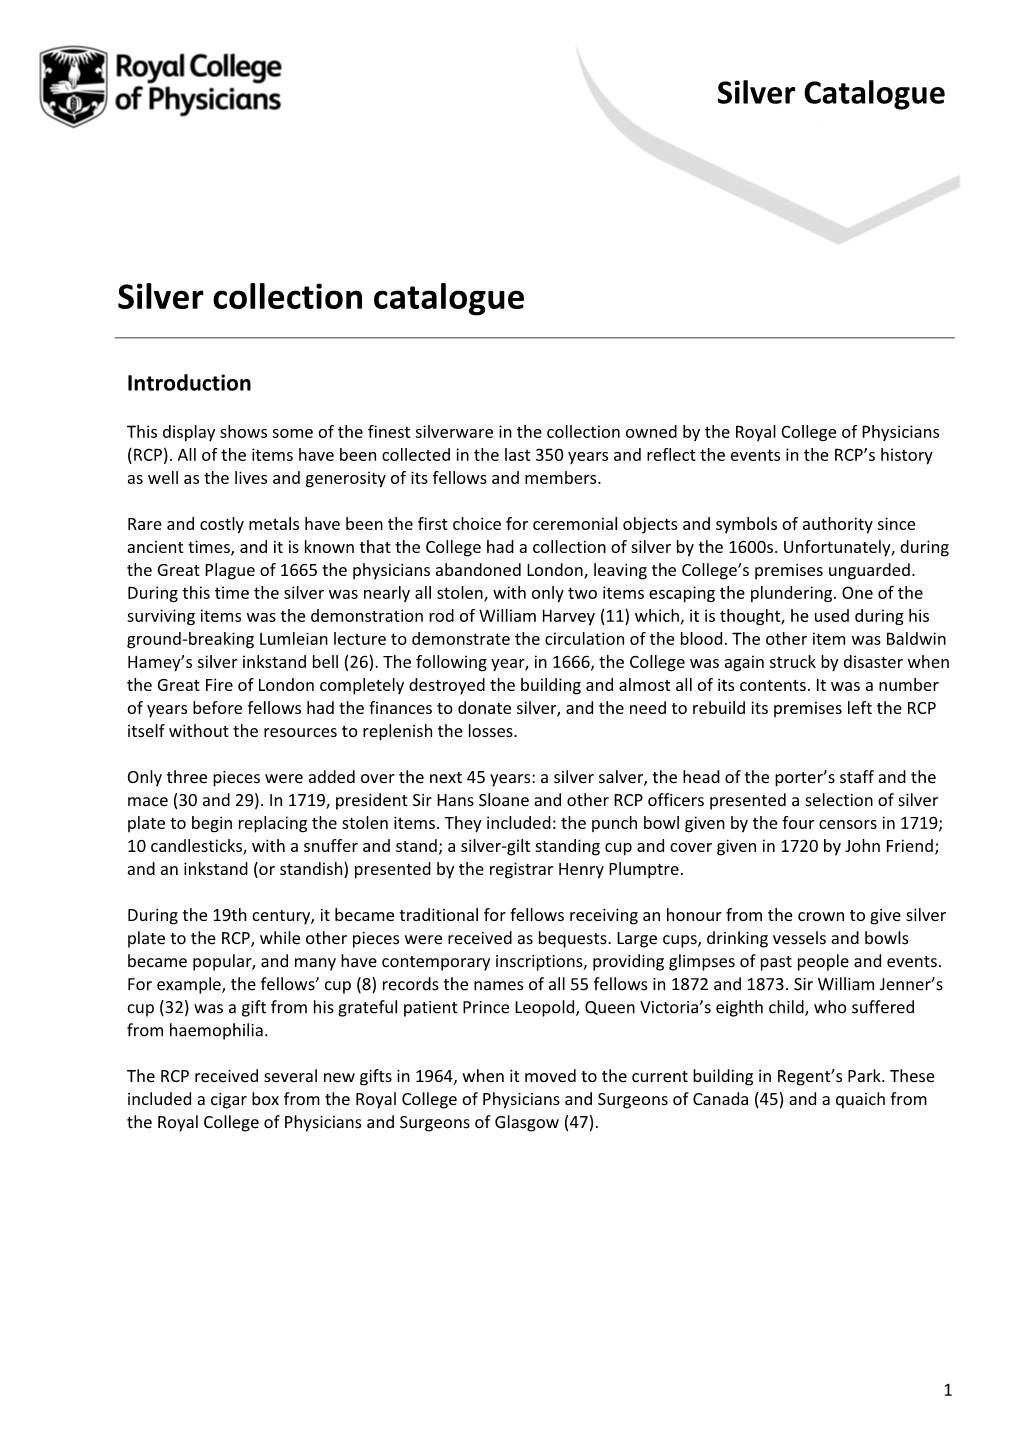 Silver Collection Catalogue